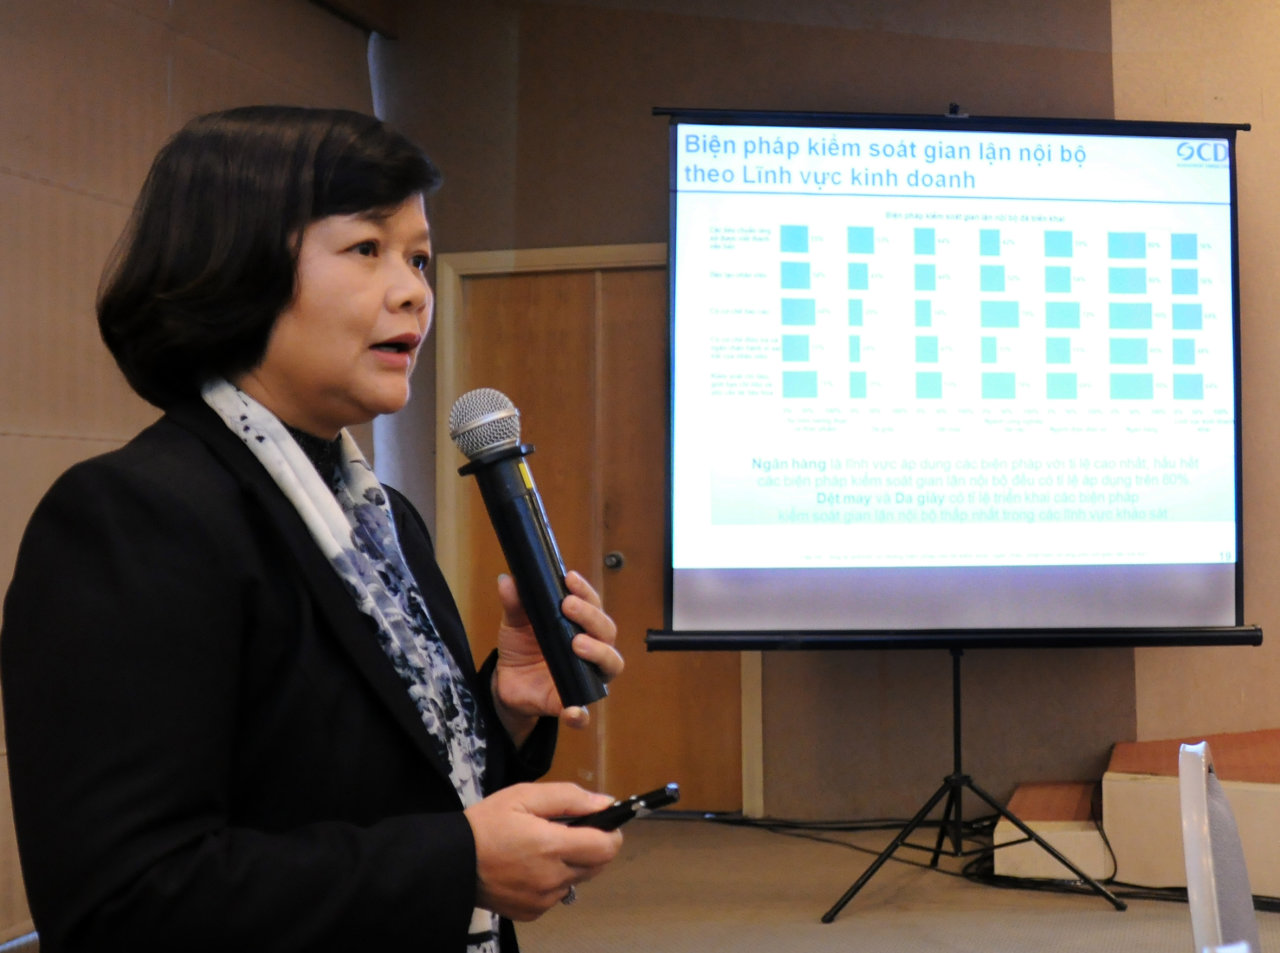 Bà Trần Thị Kim Thu, chuyên gia thống kê Công ty tư vấn OCD, phát biểu tại buổi công bố kết quả khảo sát hiện trạng thực hành liêm chính trong kinh doanh của doanh nghiệp tại VN - Ảnh: Trần Quốc Tuấn